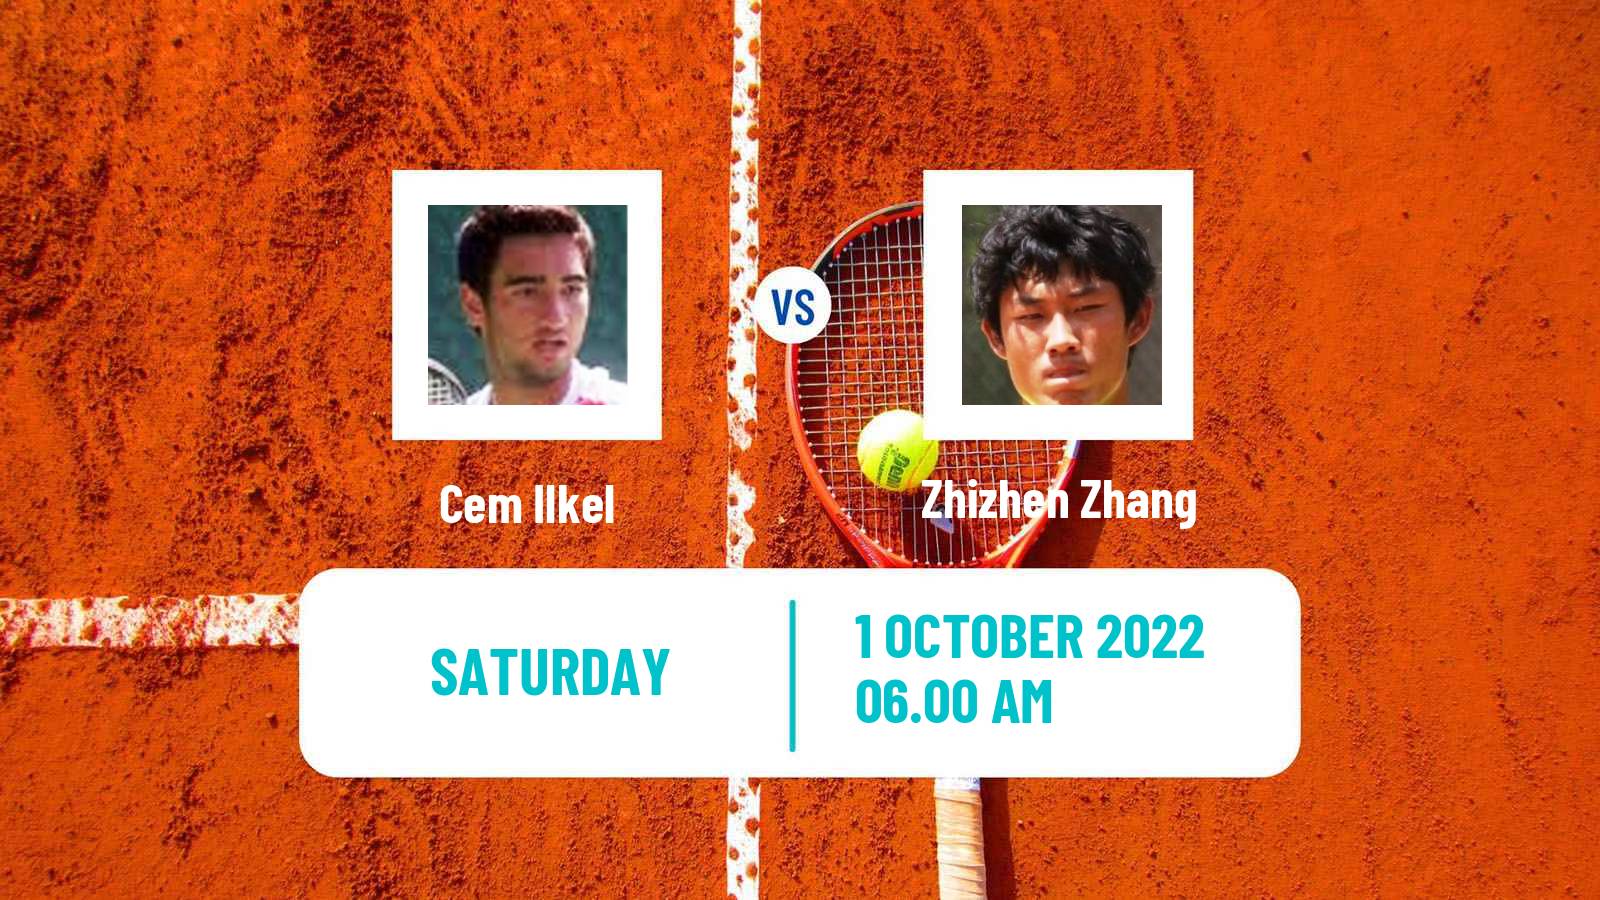 Tennis ATP Nur-Sultan Cem Ilkel - Zhizhen Zhang